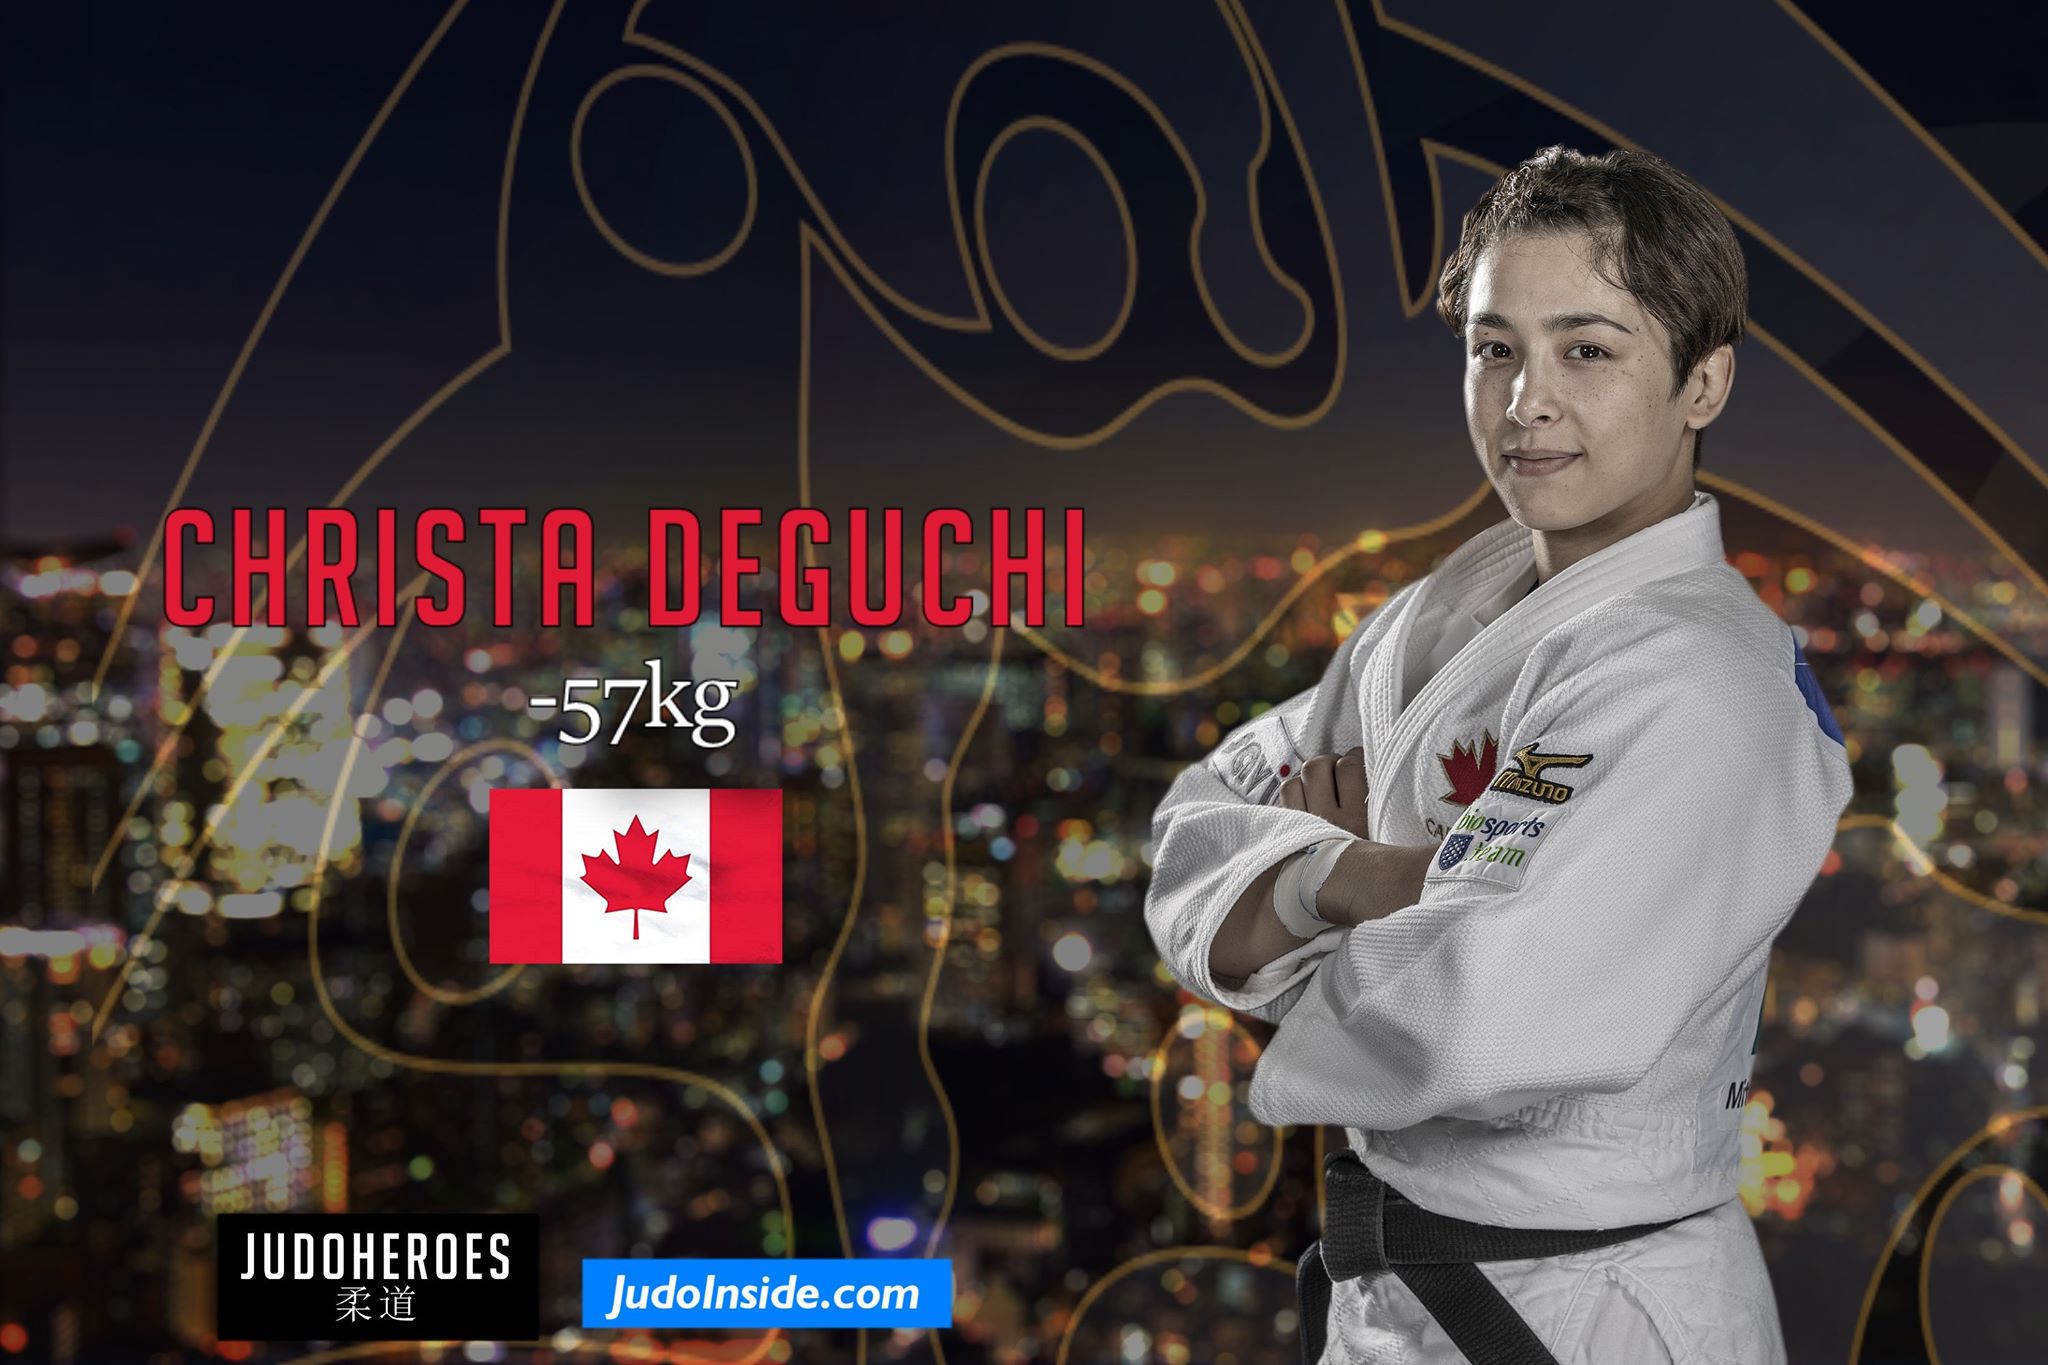 20190819_jh_judoworlds_can_57_christa_deguchi